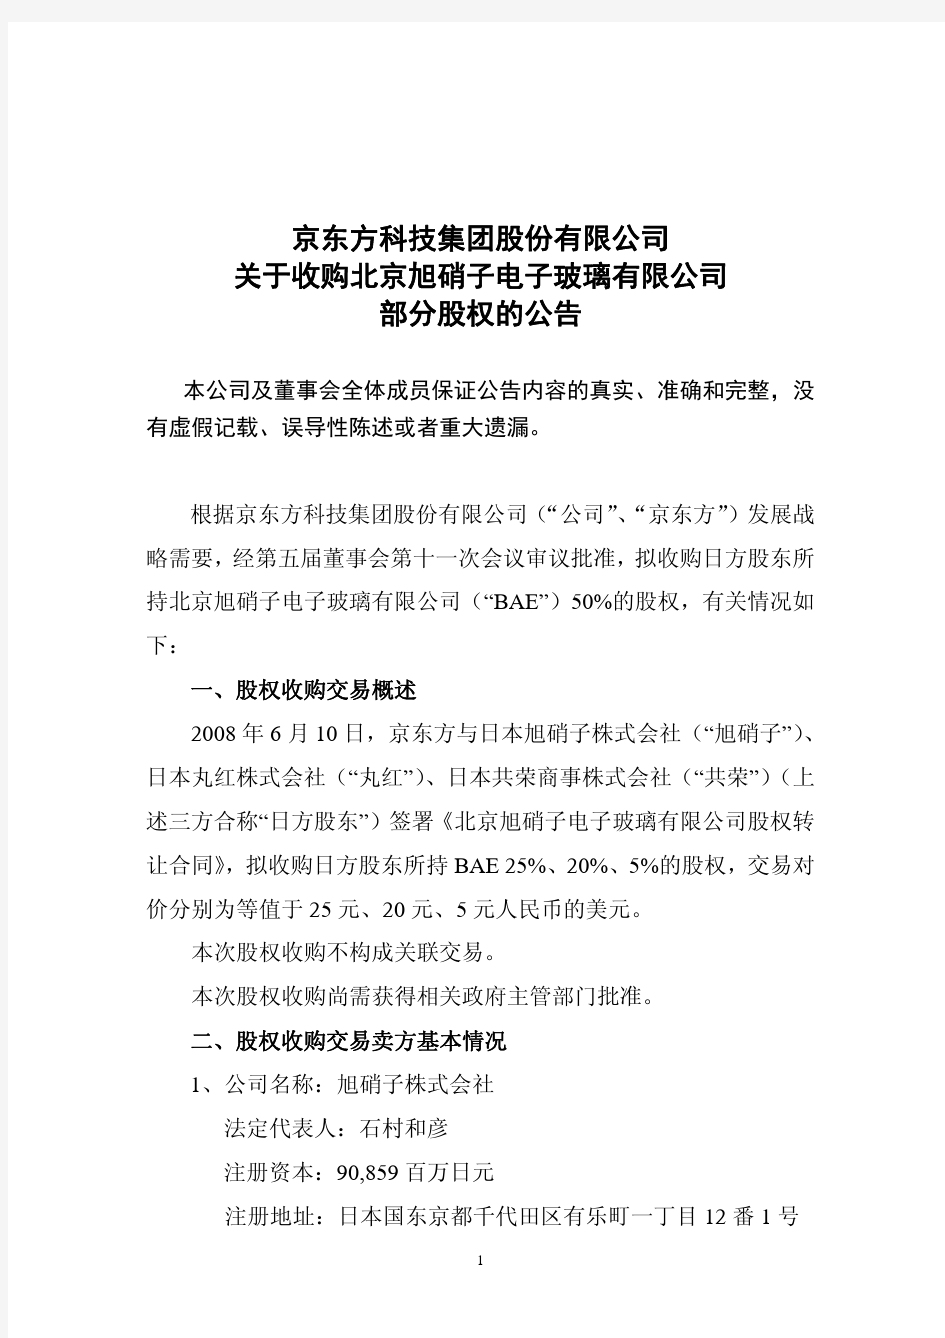 京东方科技集团股份有限公司 关于收购北京旭硝子电子玻璃有限.